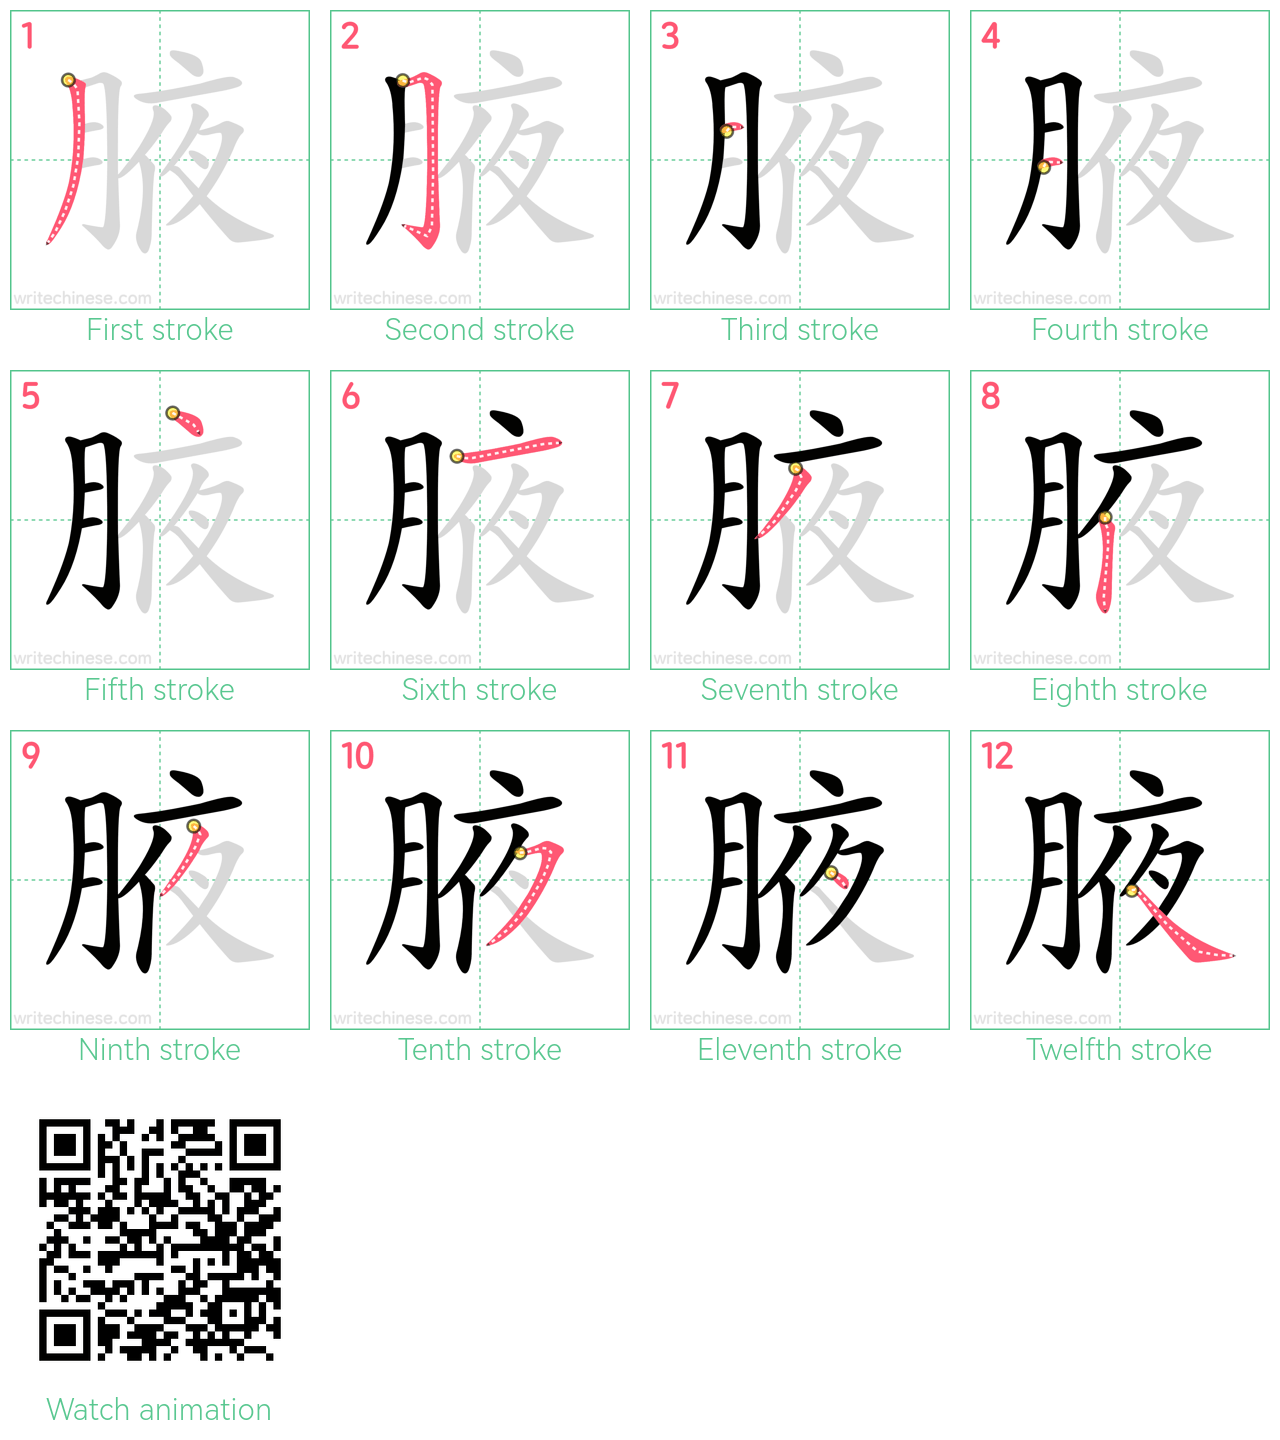 腋 step-by-step stroke order diagrams